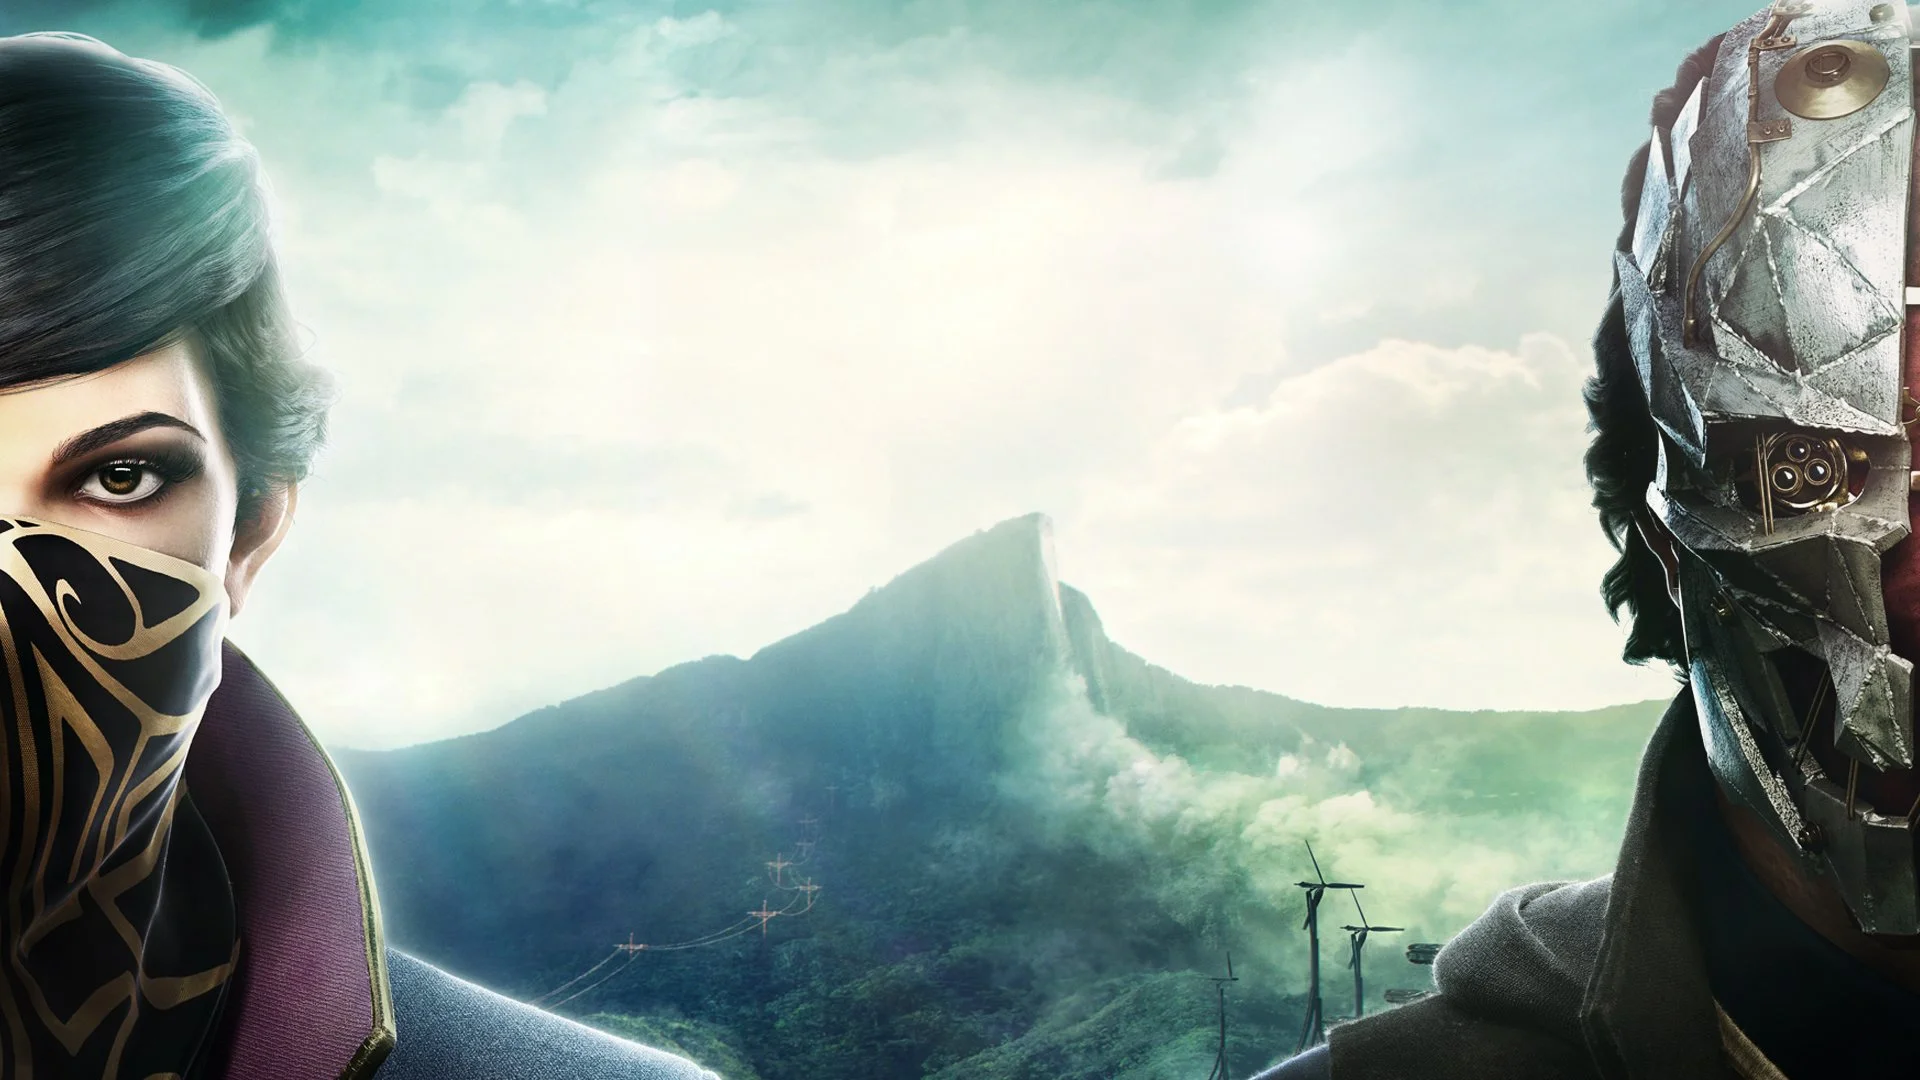 Геймплейно новая Dishonored 2 держится на высоте, а вот с  сюжетом все не так хорошо. Паша Пивоваров прошел игру и теперь делится своим возмущением по поводу слабого сценария и деревянной главной героини.